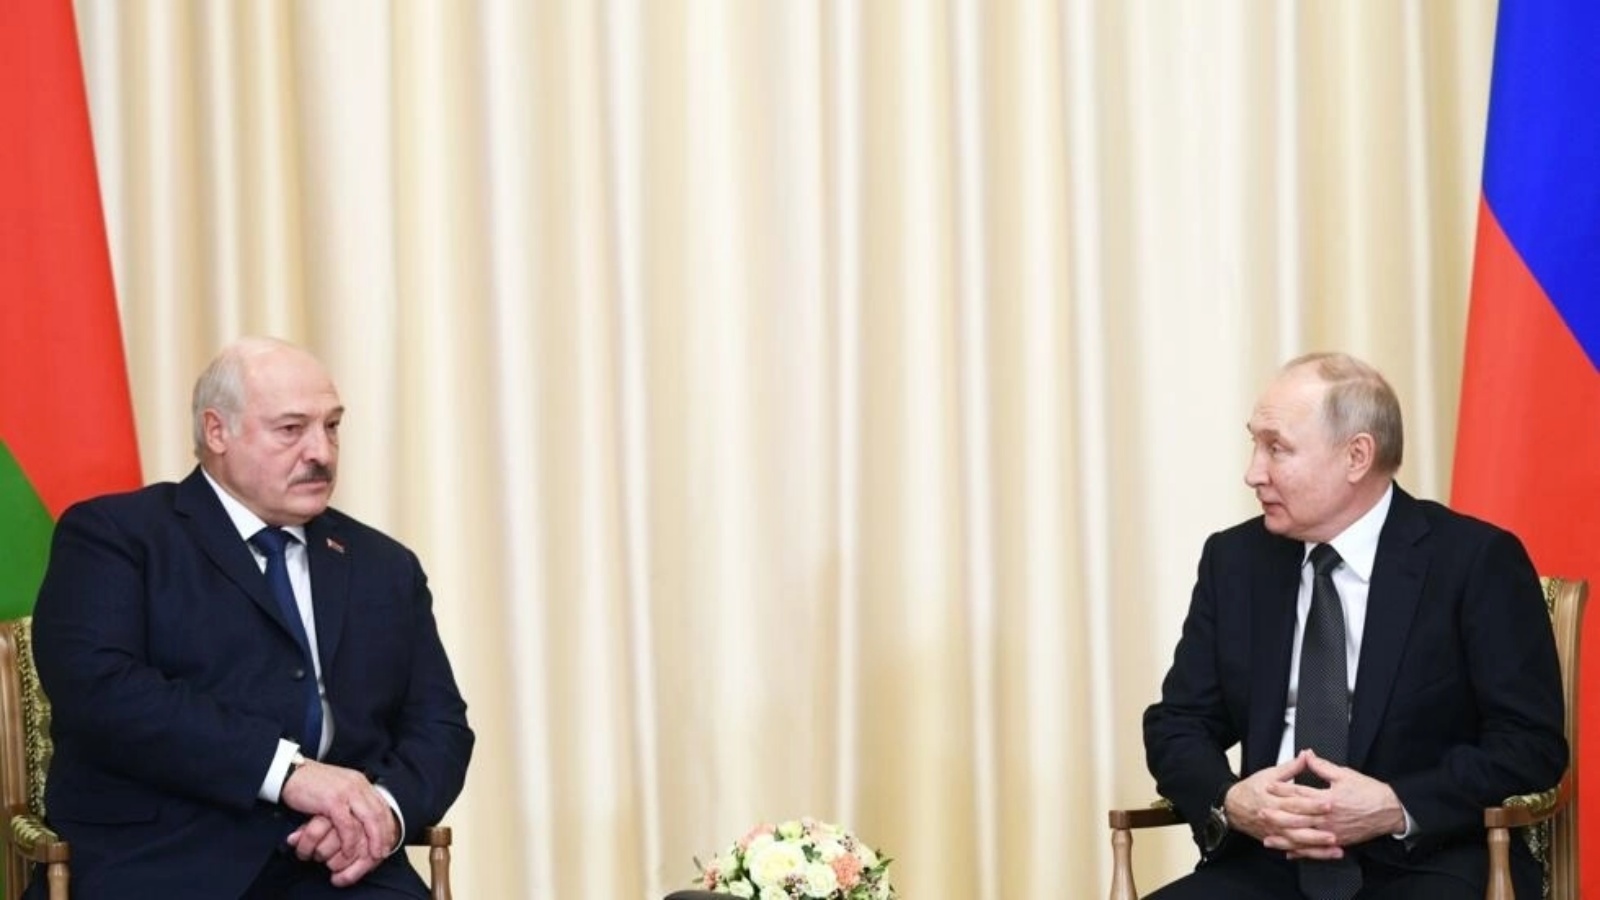 الرئيس الروسي فلاديمير بوتين ونظيره البيلاروسي ألكسندر لوكاشينكو في 17 فبراير 2023 في نوفو أوغاريوفو قرب موسكو